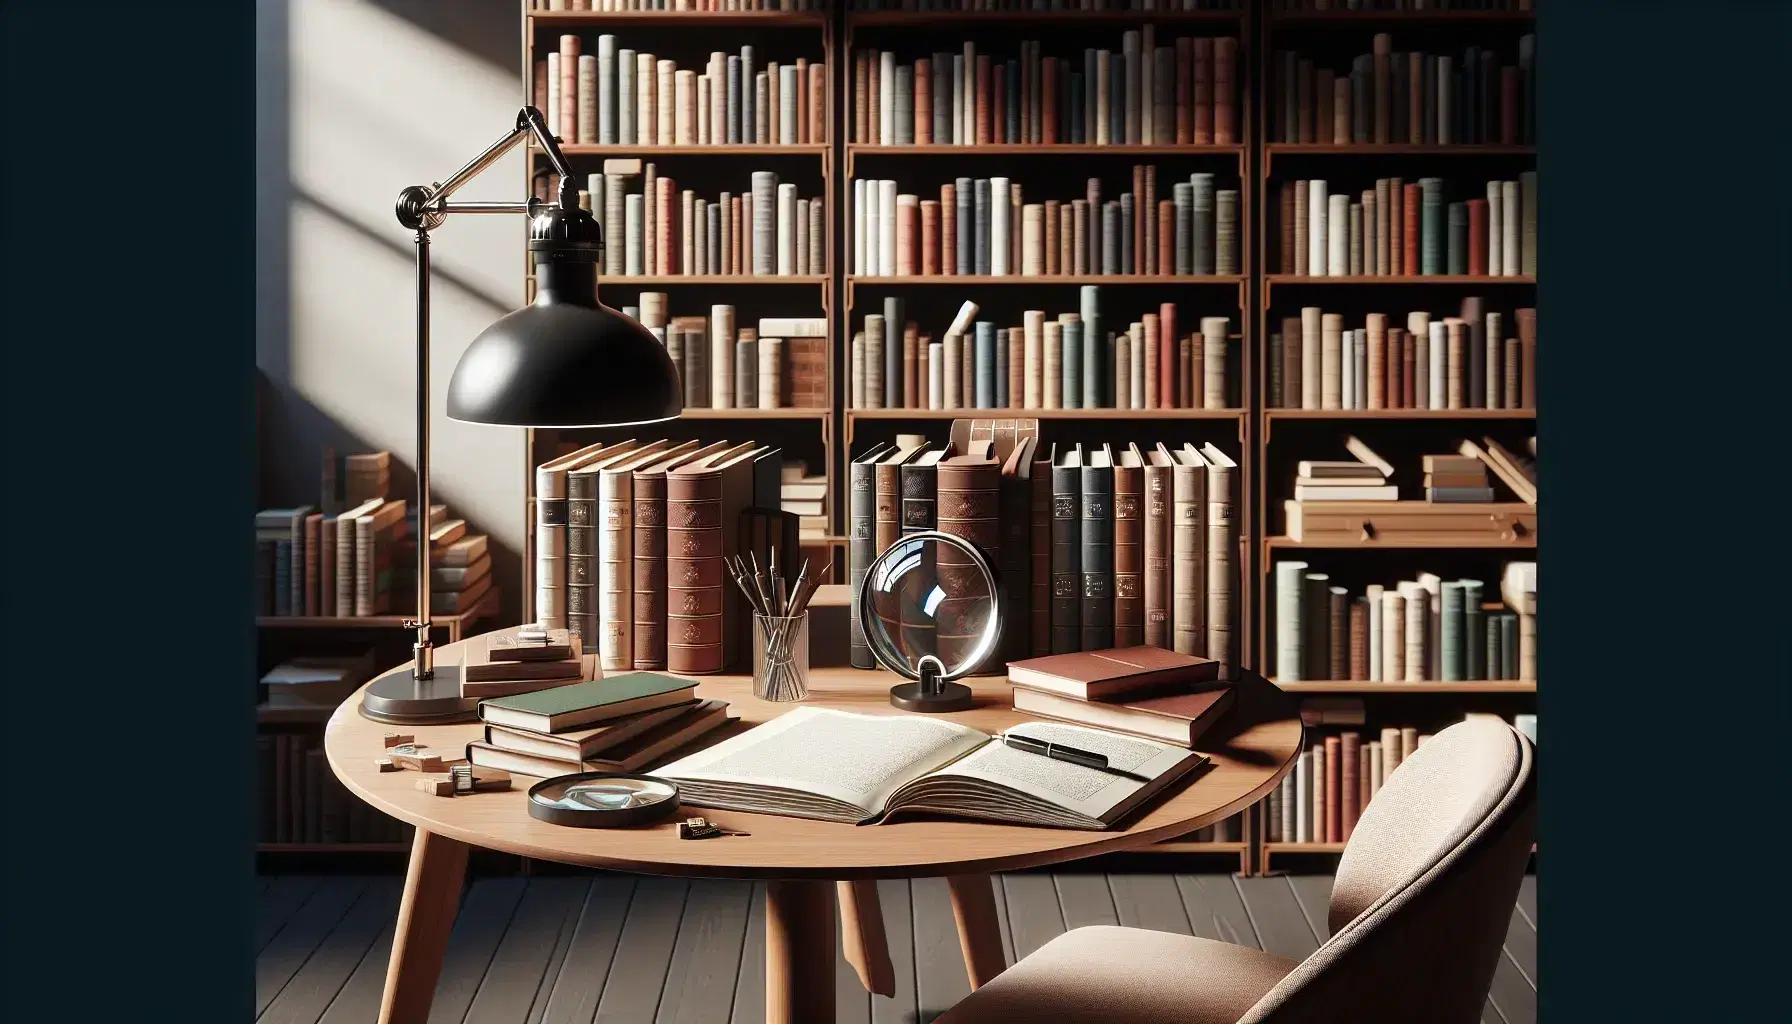 Biblioteca acogedora con estantes de madera repletos de libros, mesa con libros abiertos, lupa y pluma fuente, silla y lámpara de escritorio, ventana al fondo.